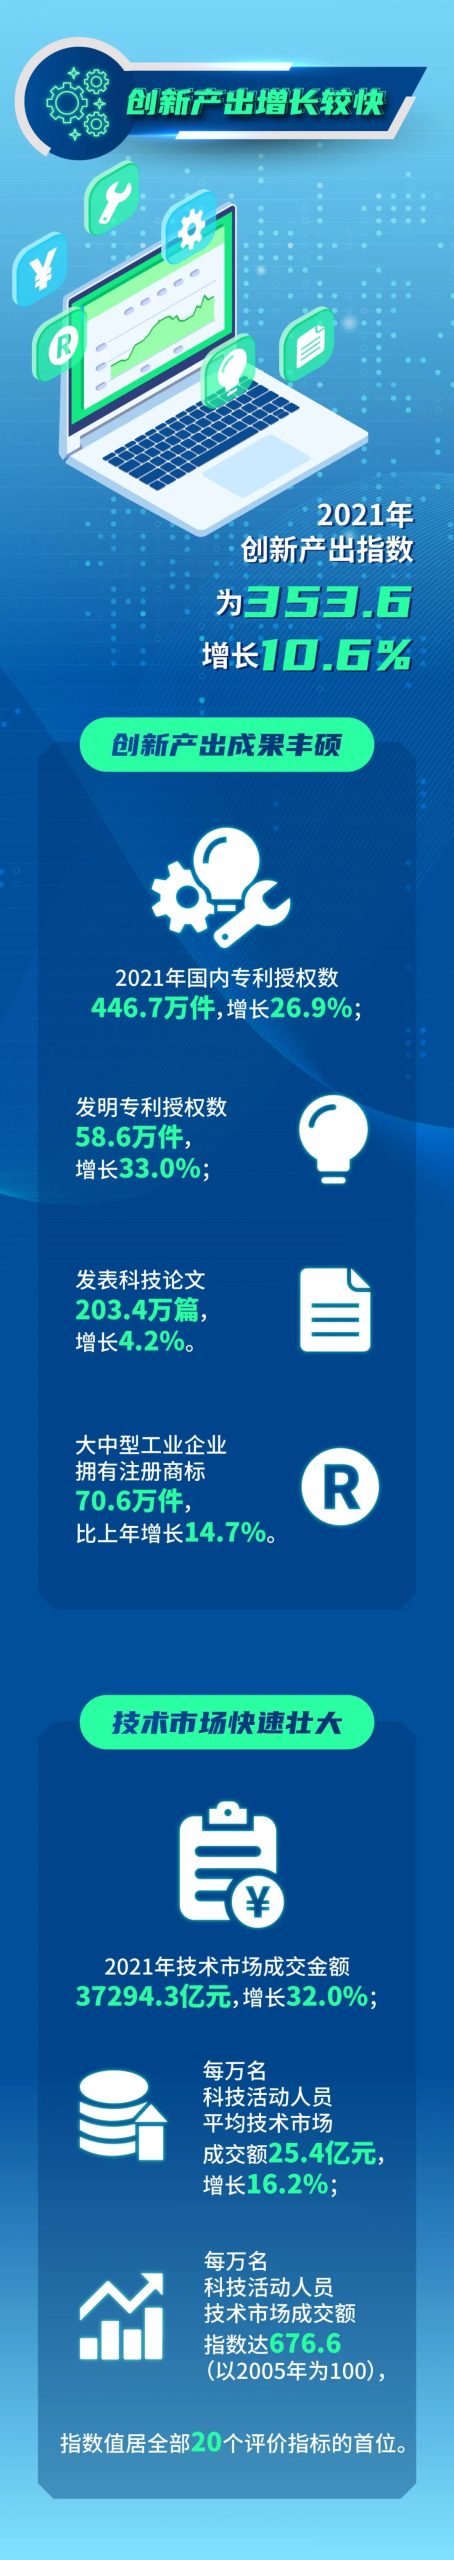 国家统计局：2021年中国创新指数